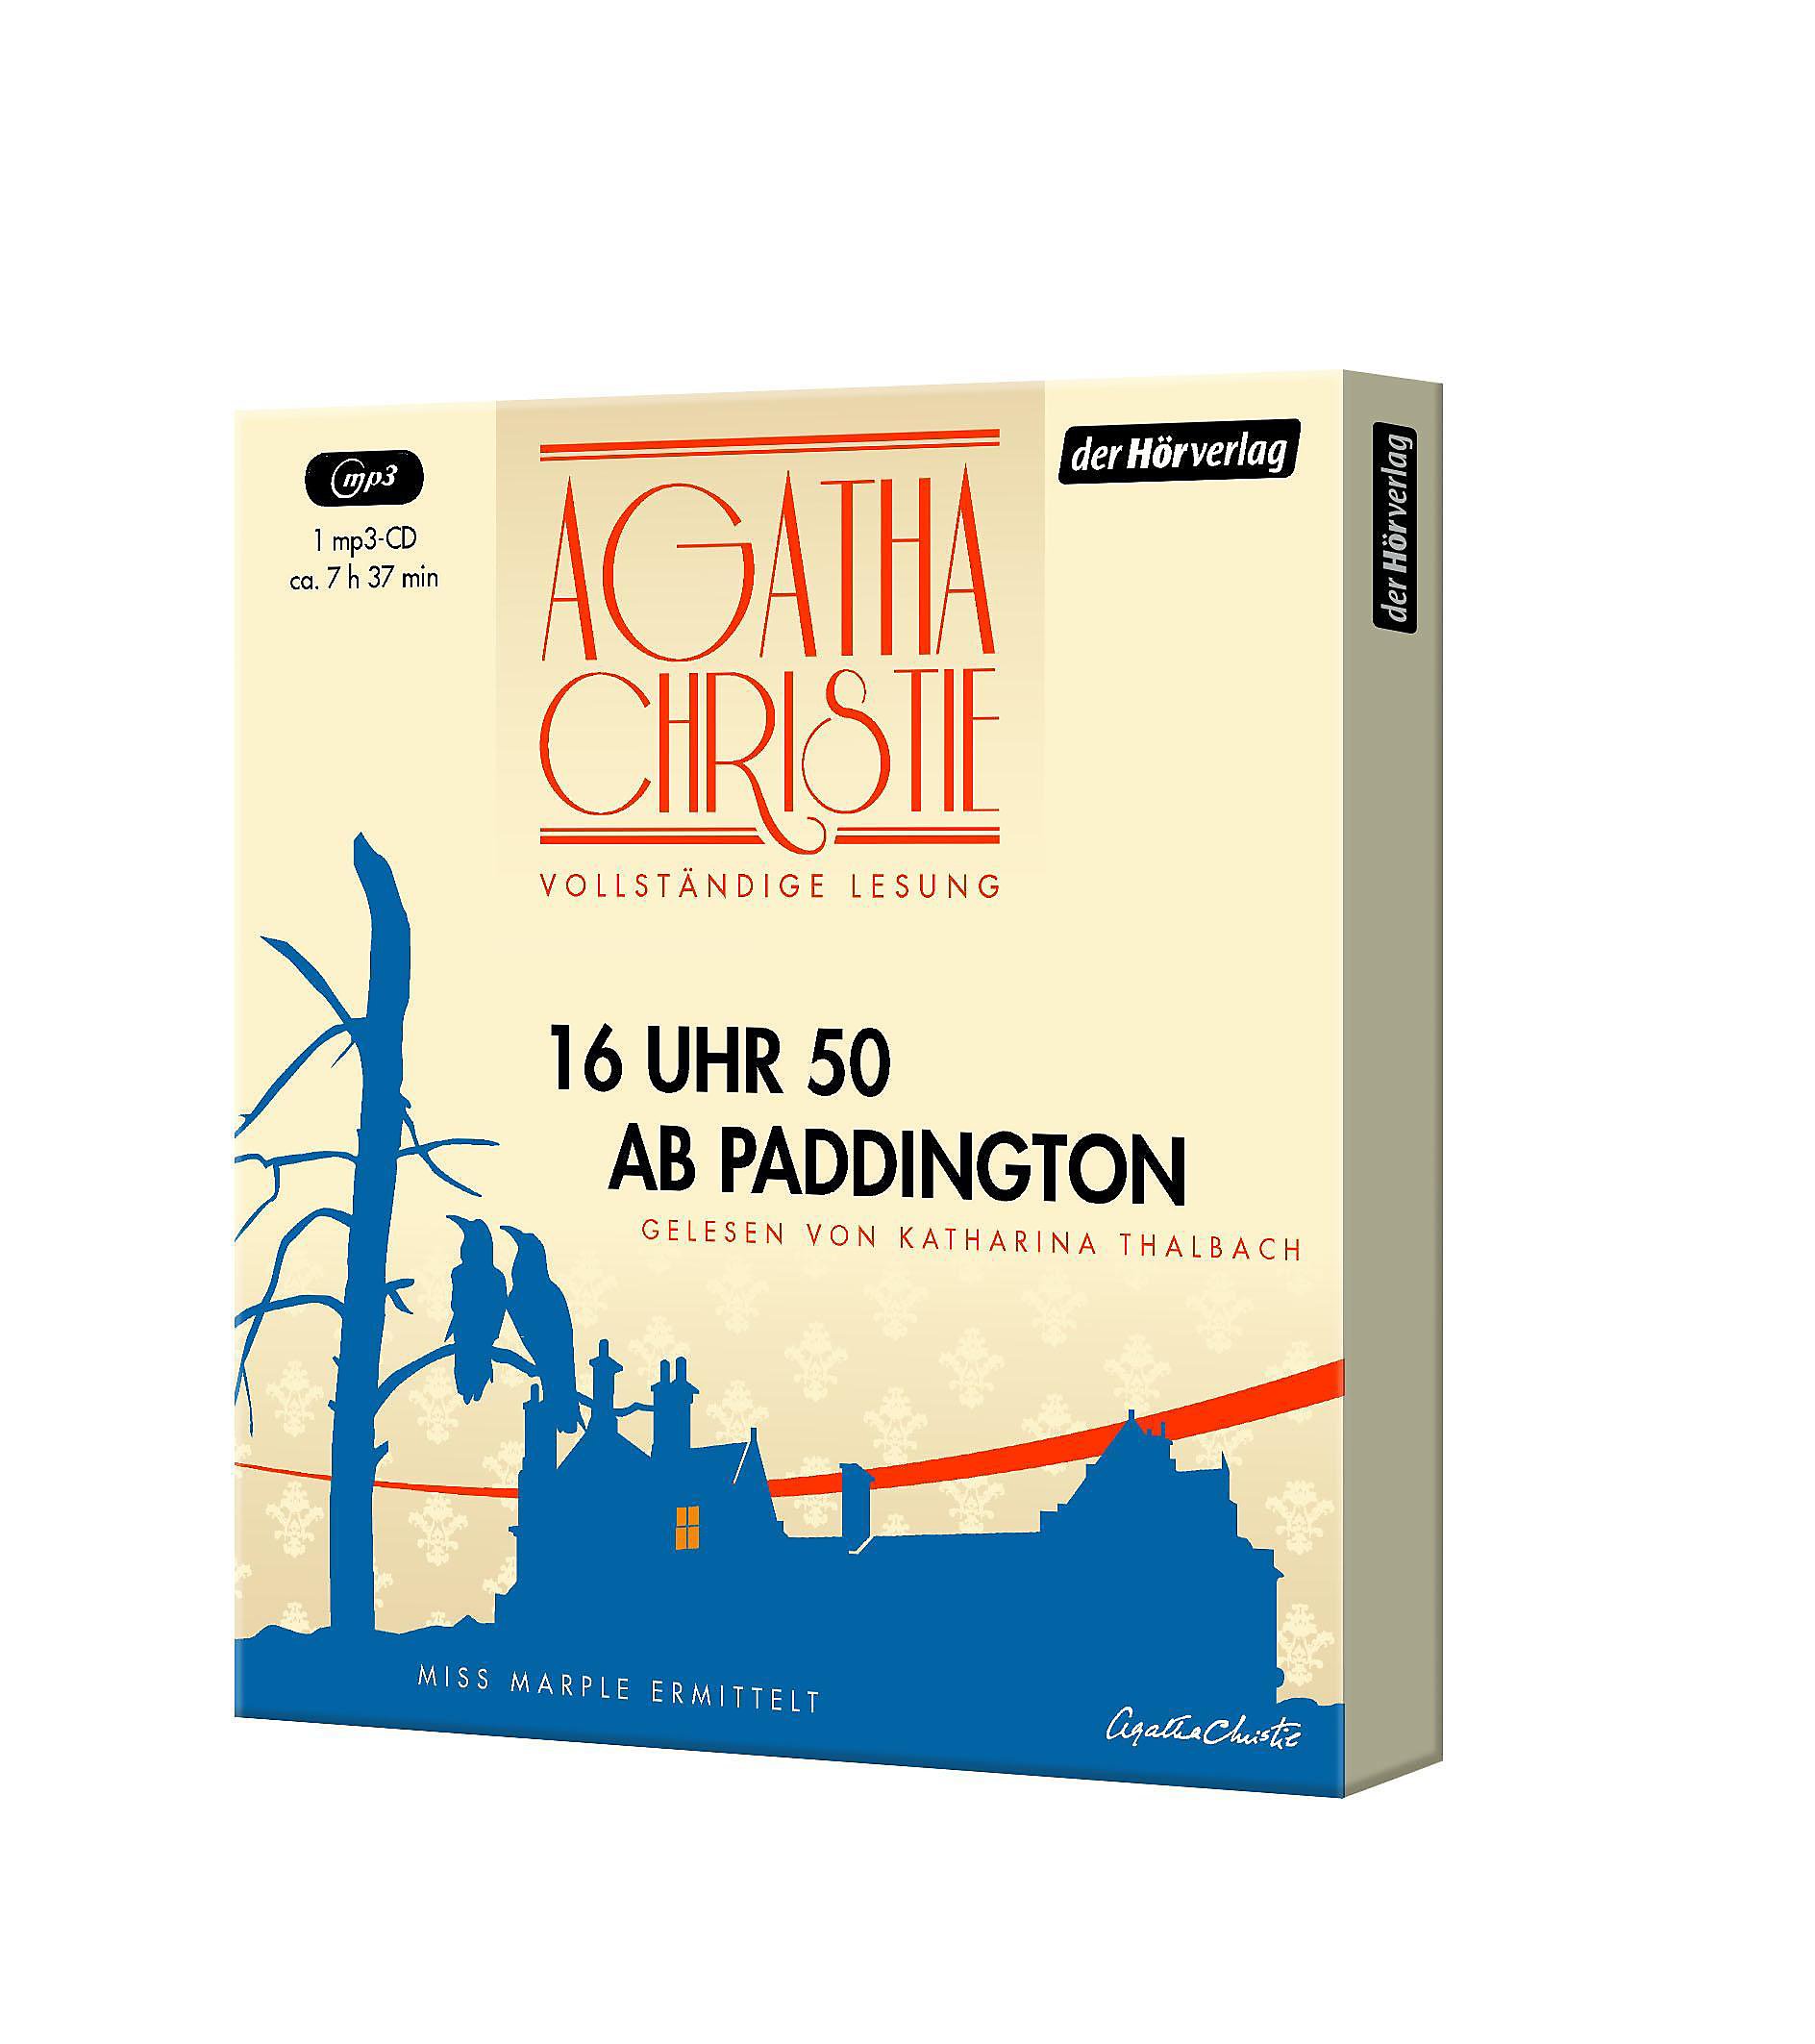 16 Uhr 50 ab Paddington, 1 MP3-CD Hörbuch günstig bestellen - Agatha Christie 16 Uhr 50 Ab Paddington